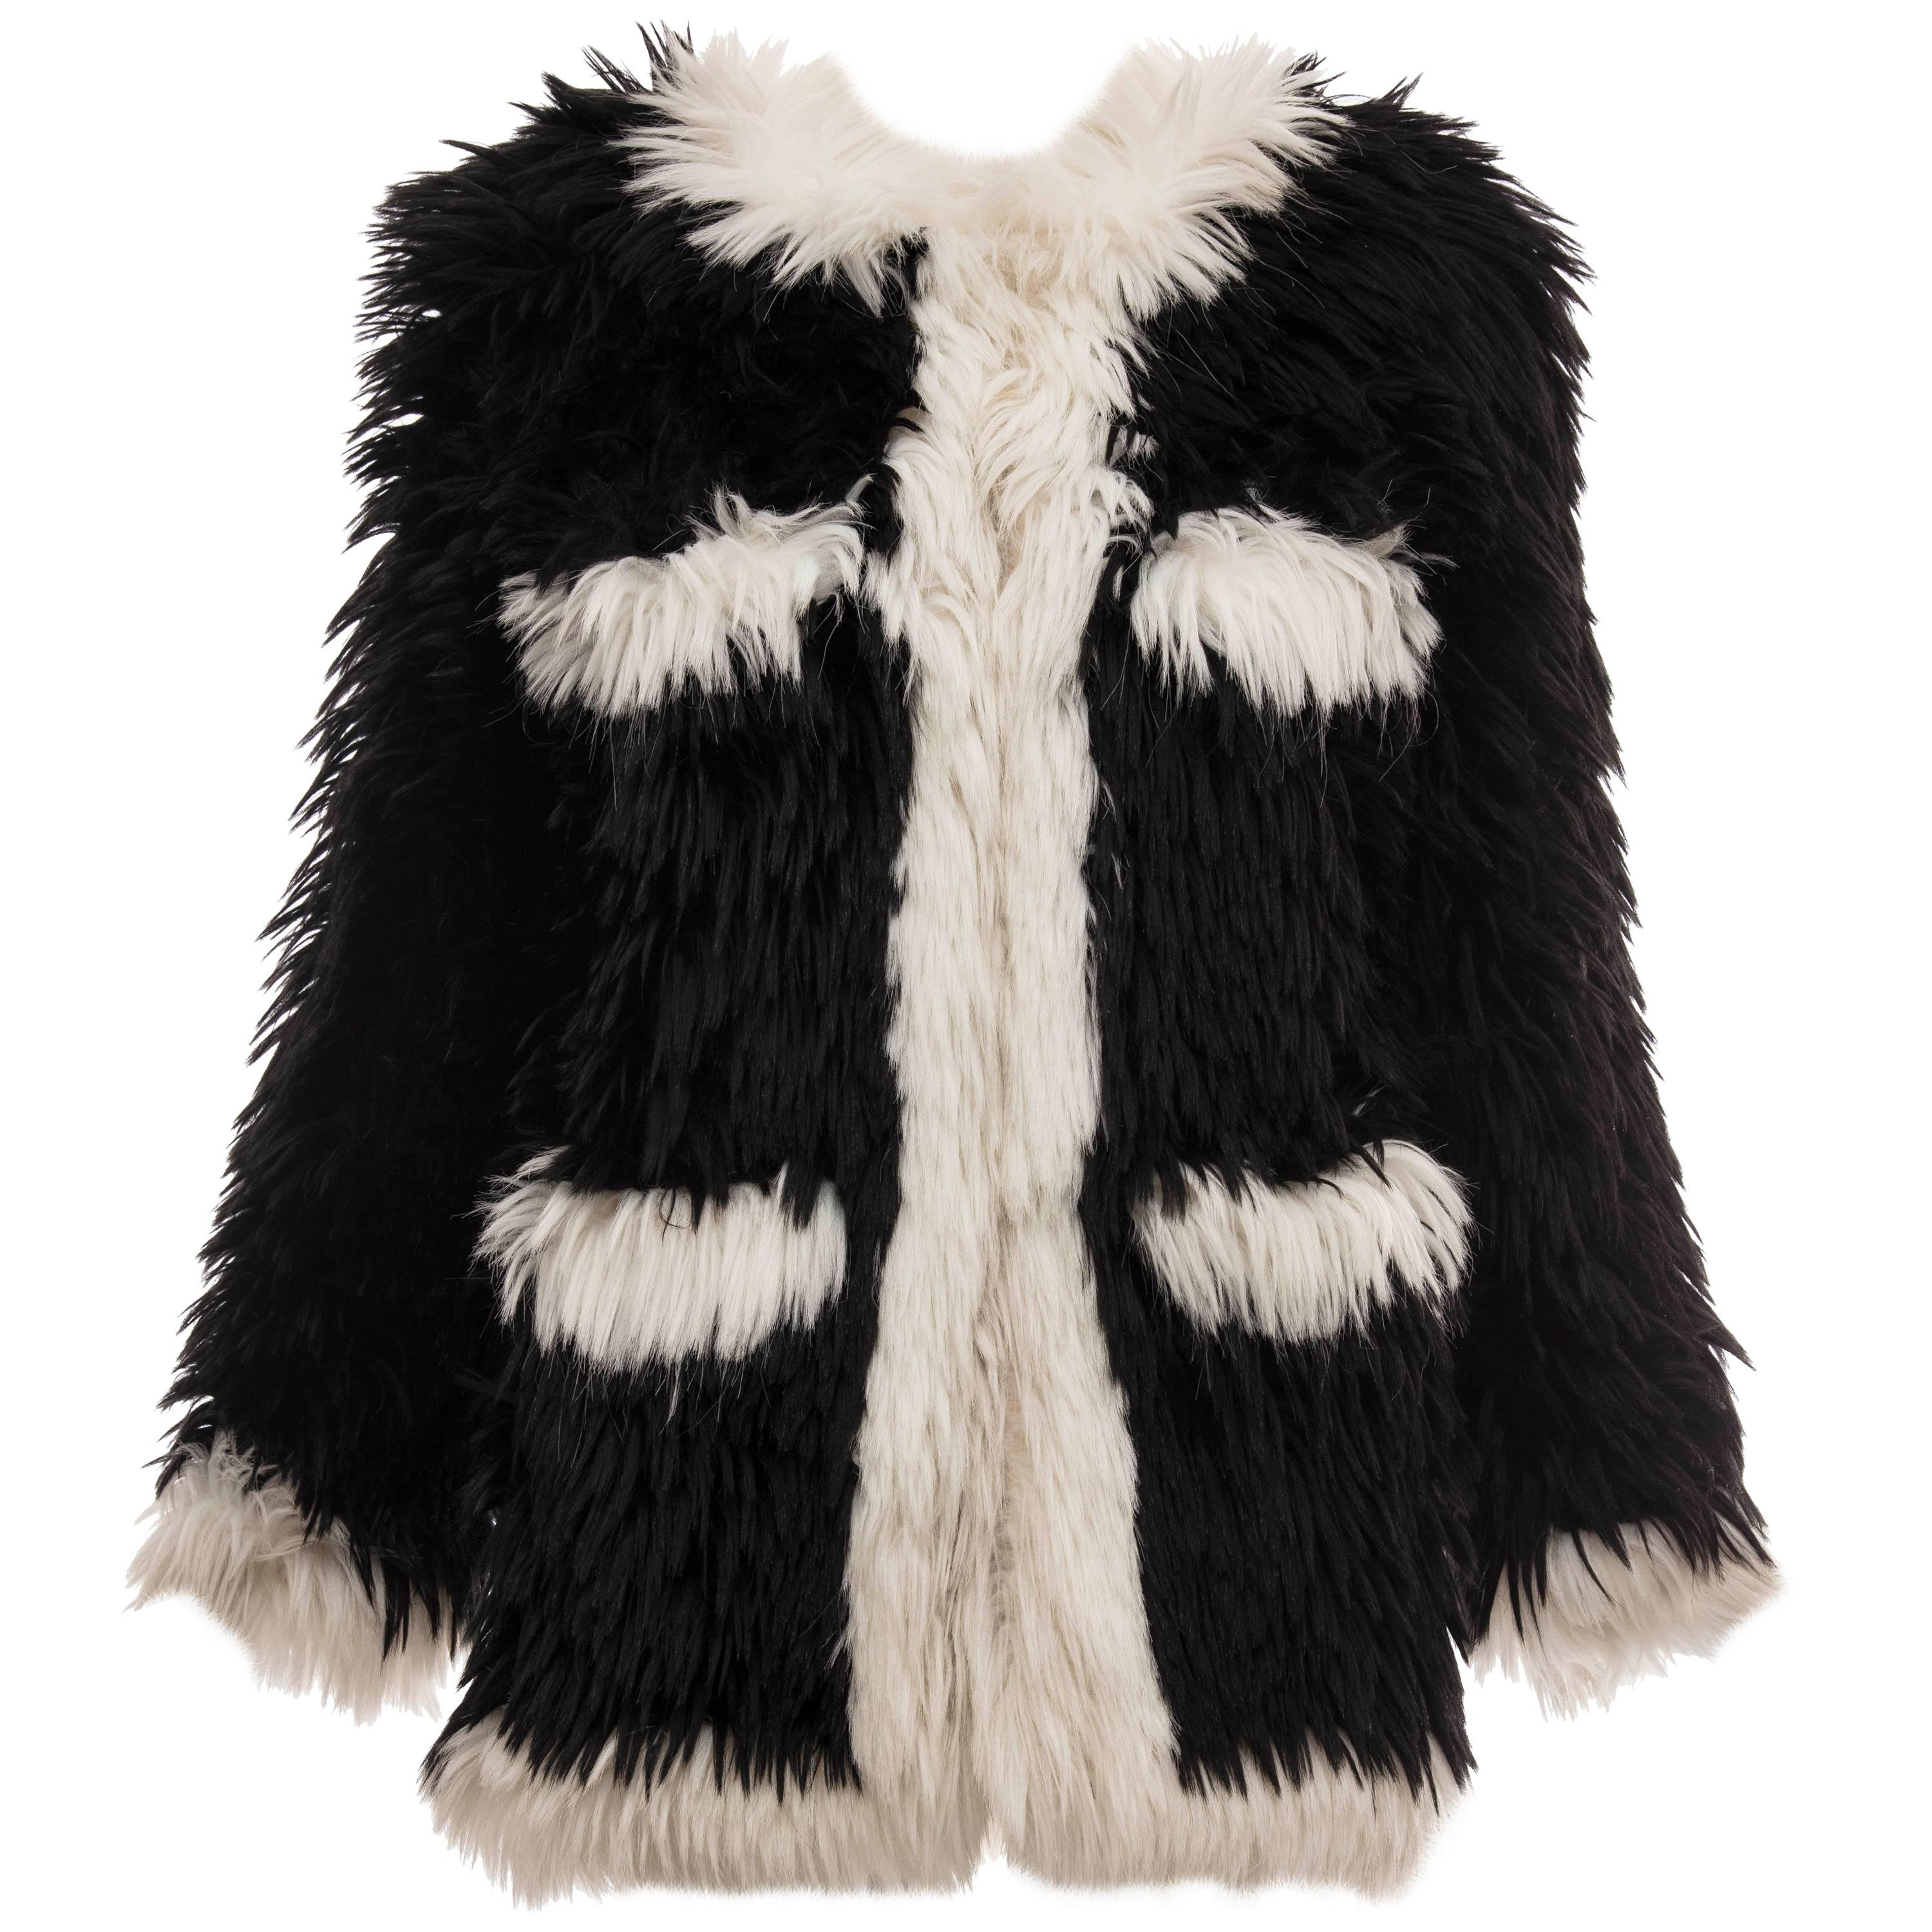 Chanel Tweed jacket - ShopStyle